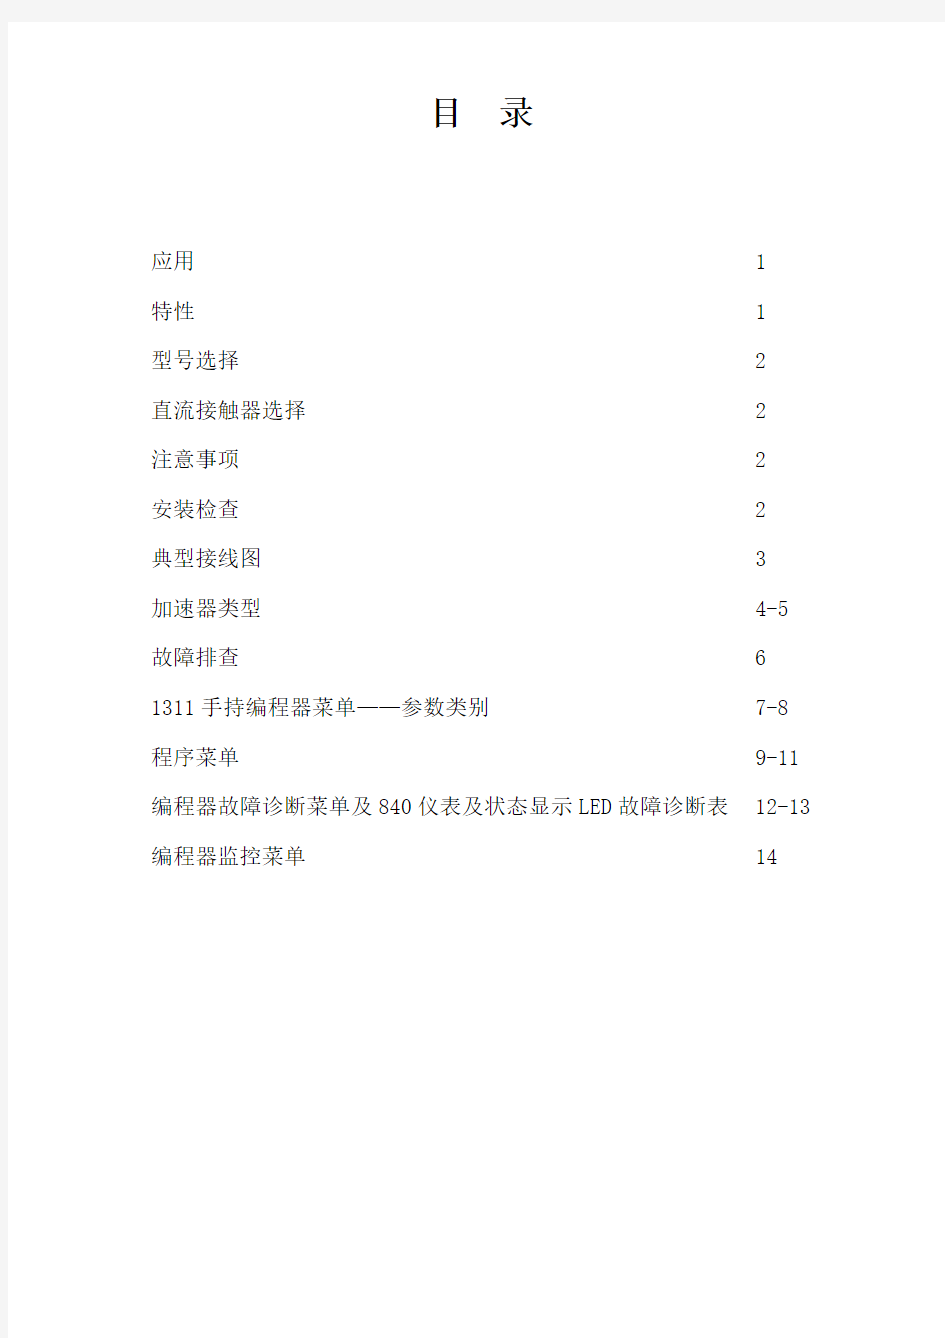 科蒂斯控制器1243中文使用手册